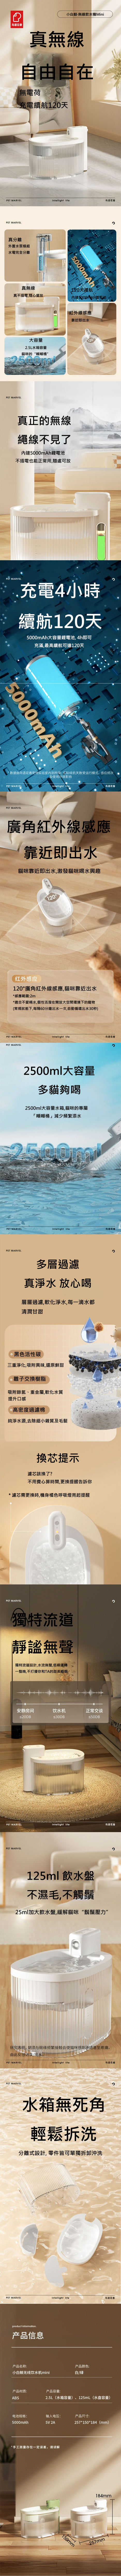 PET MARVEL 鳥語花香 小白鯨mini water dispenser 2.5L 